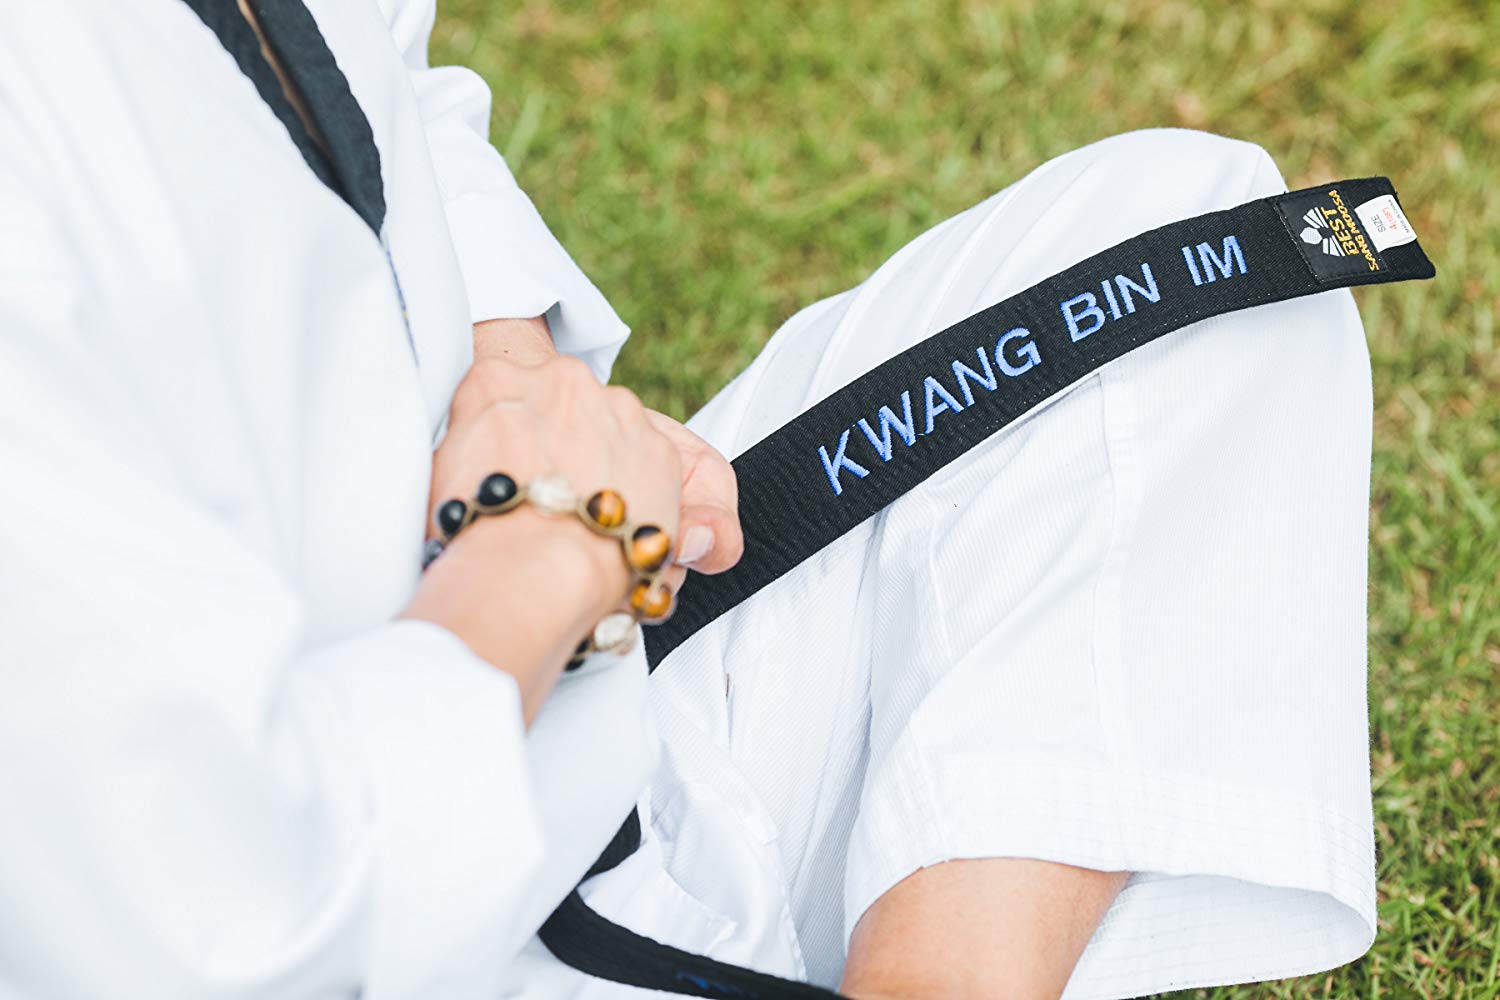 Kwang Bin